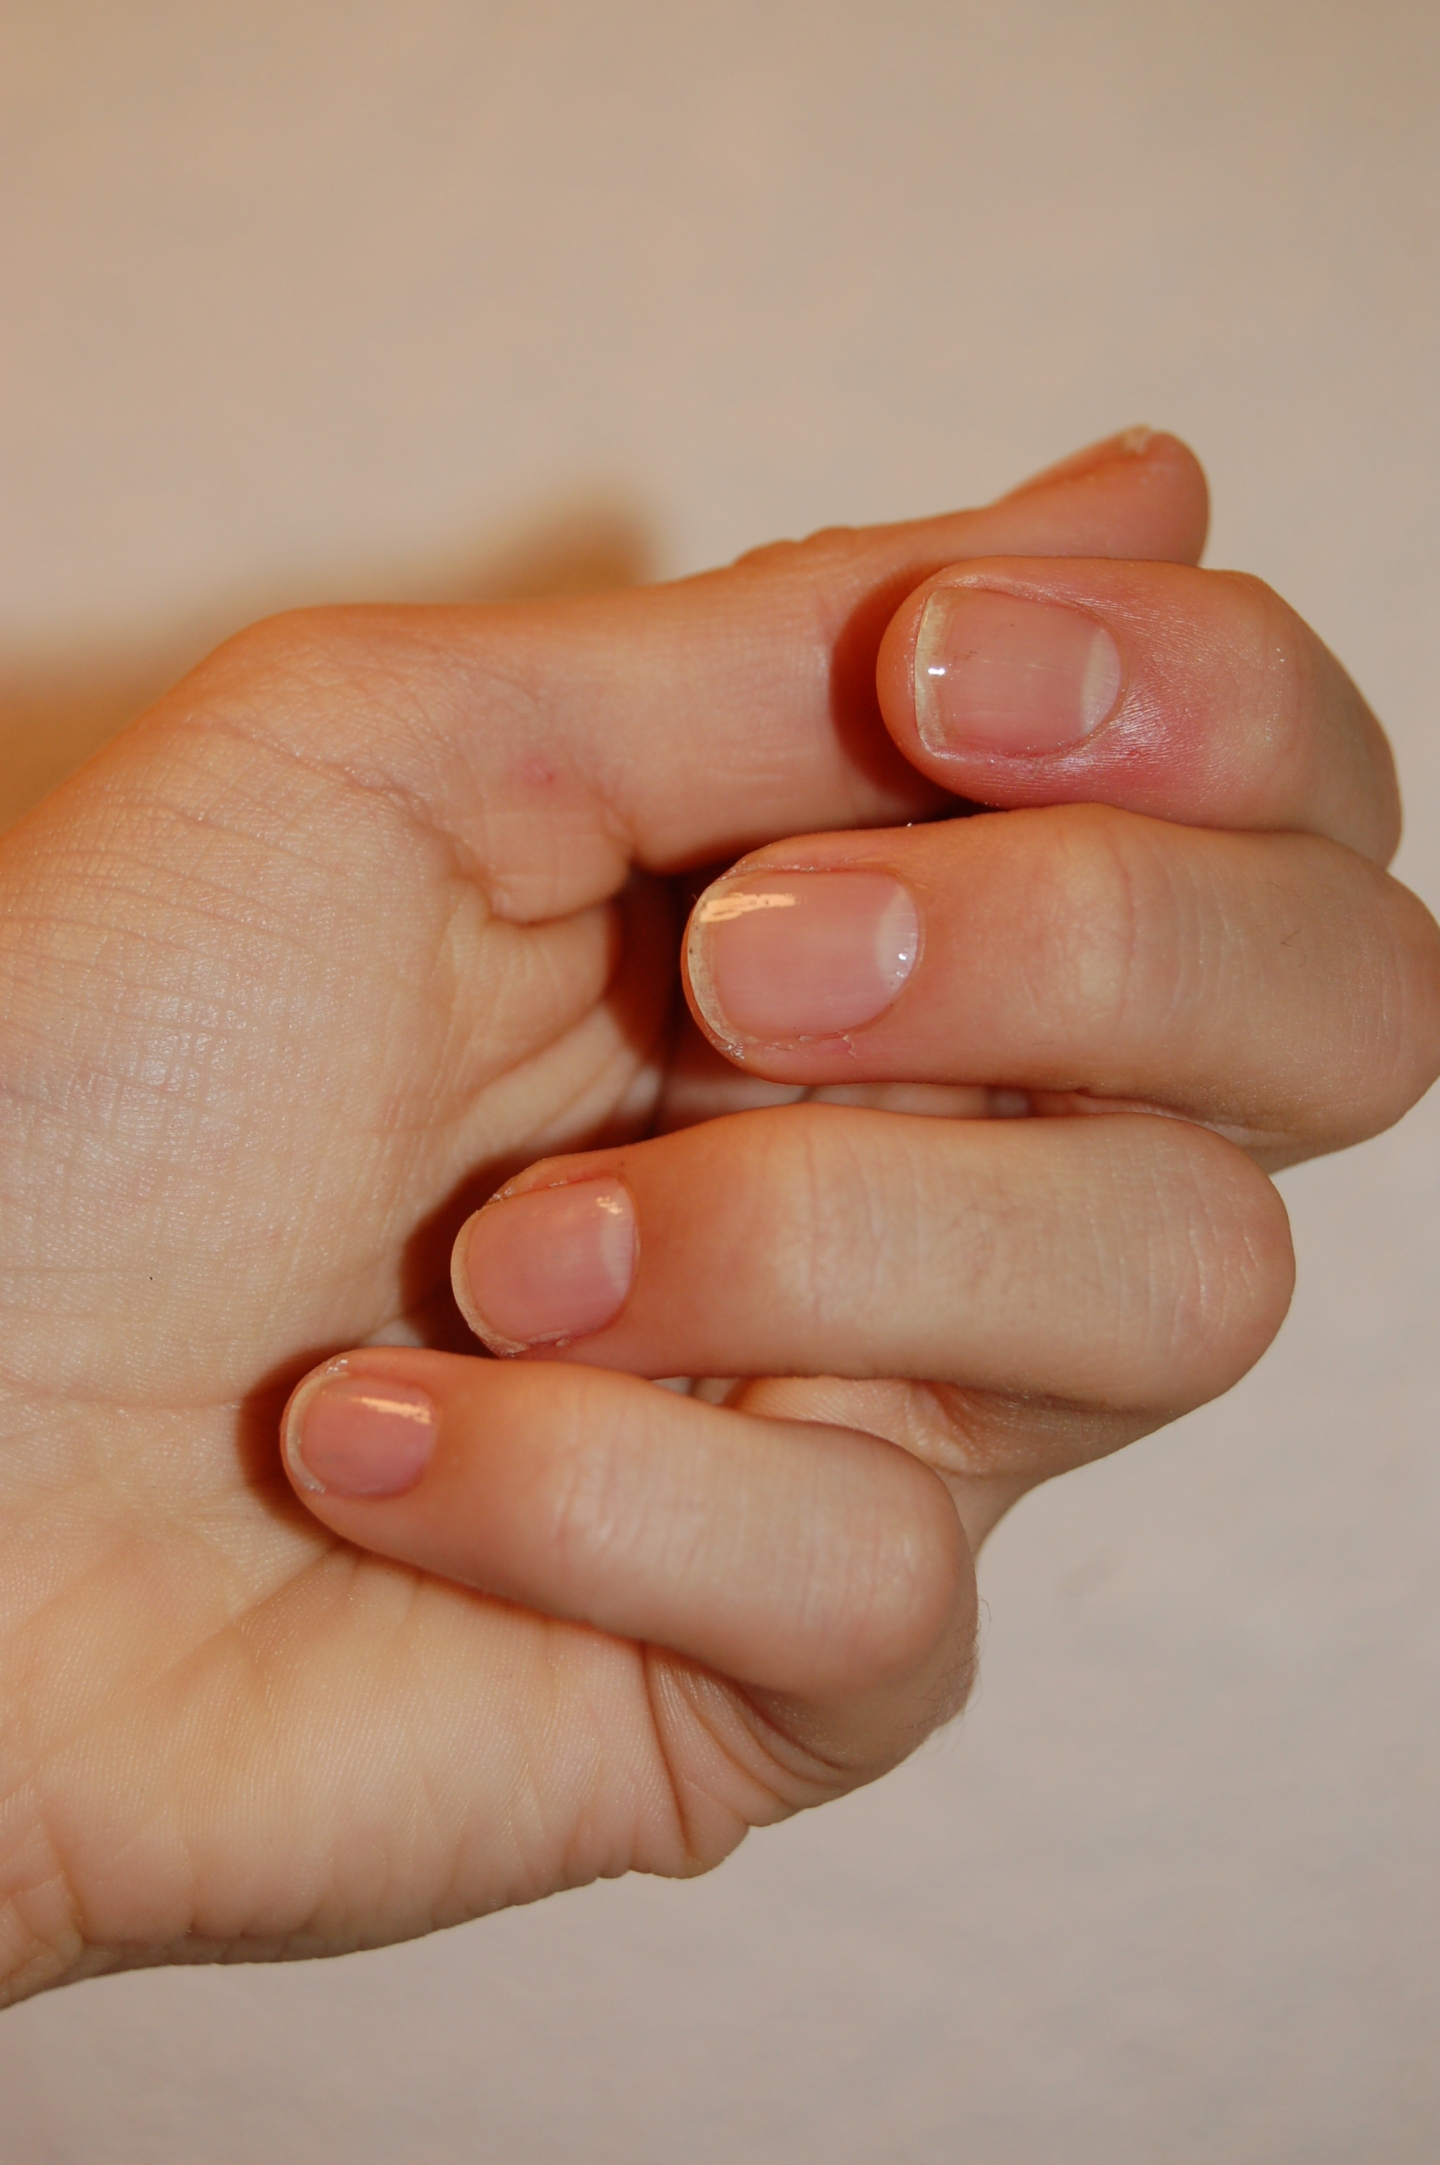 nail care routine avec la gamme nail builders de revlon